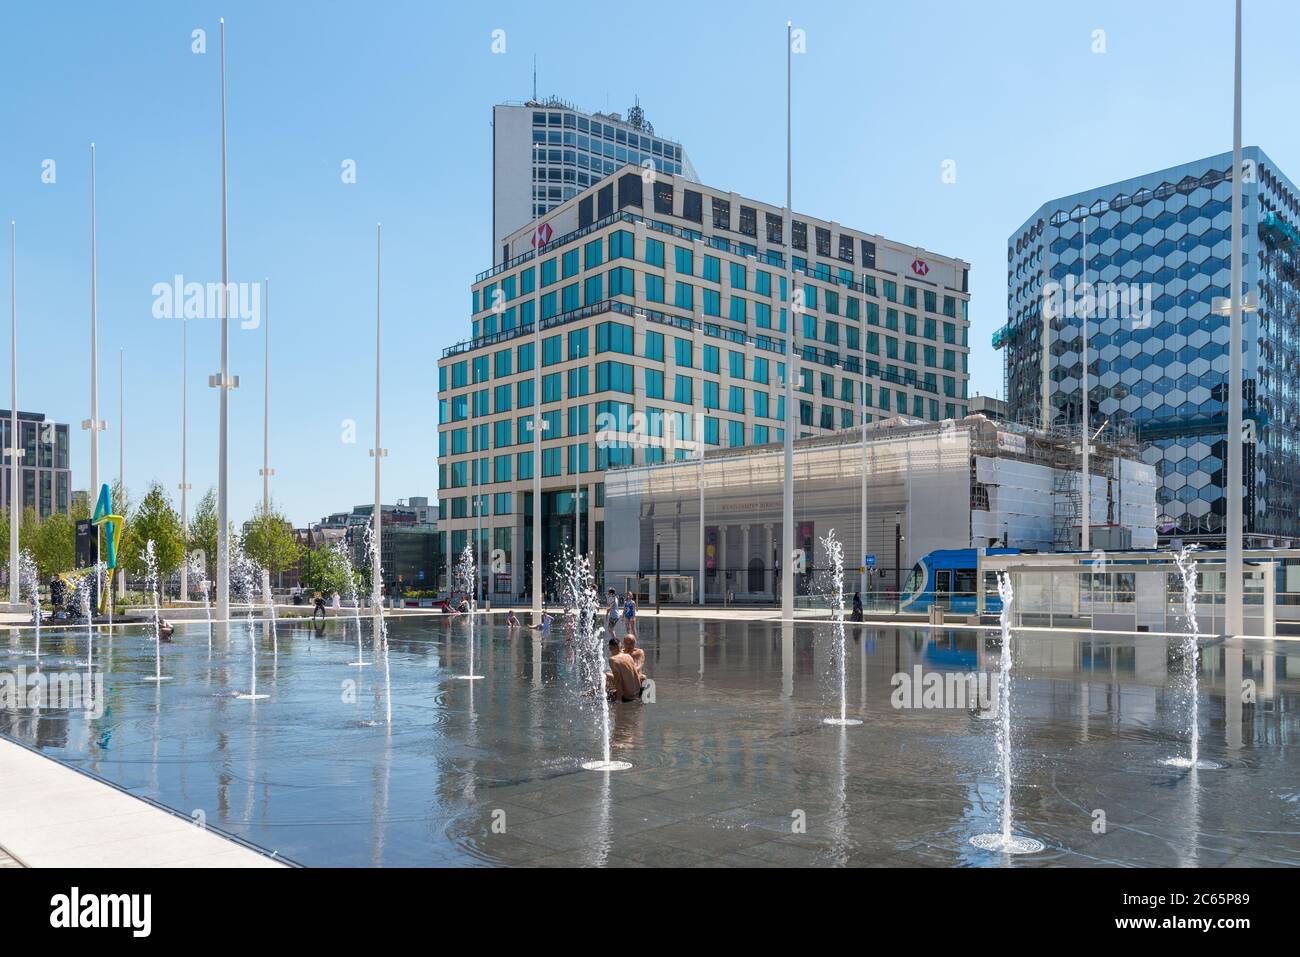 La gente se refresca en las fuentes de agua en el espejo de agua en Centenary Square, Birmingham, Reino Unido Foto de stock